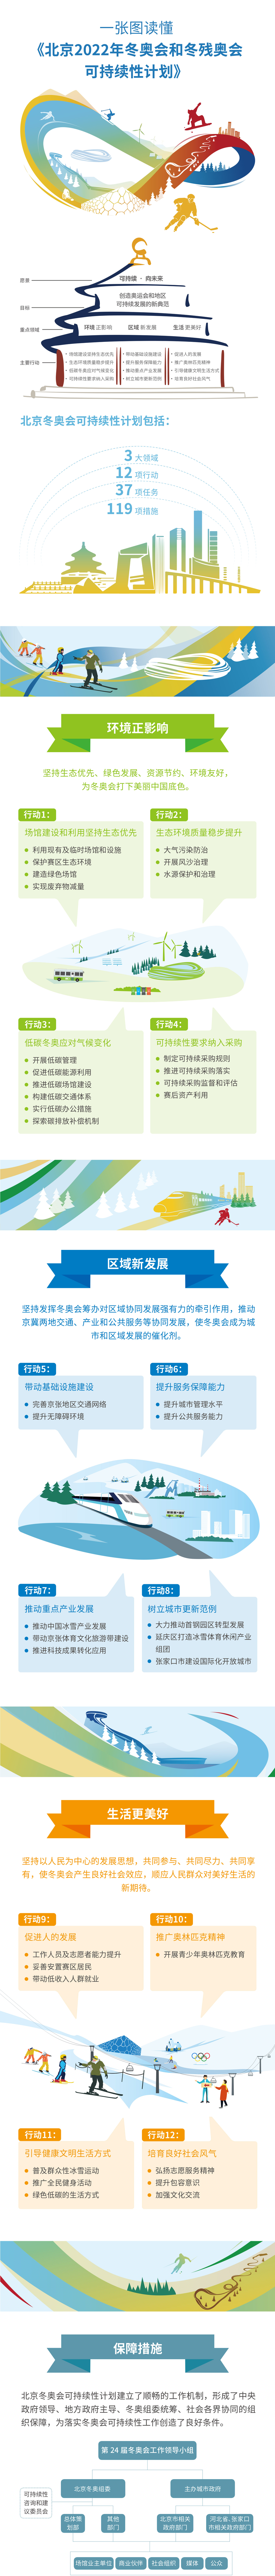 一图看懂《北京2022年冬奥会和冬残奥会可持续性计划》